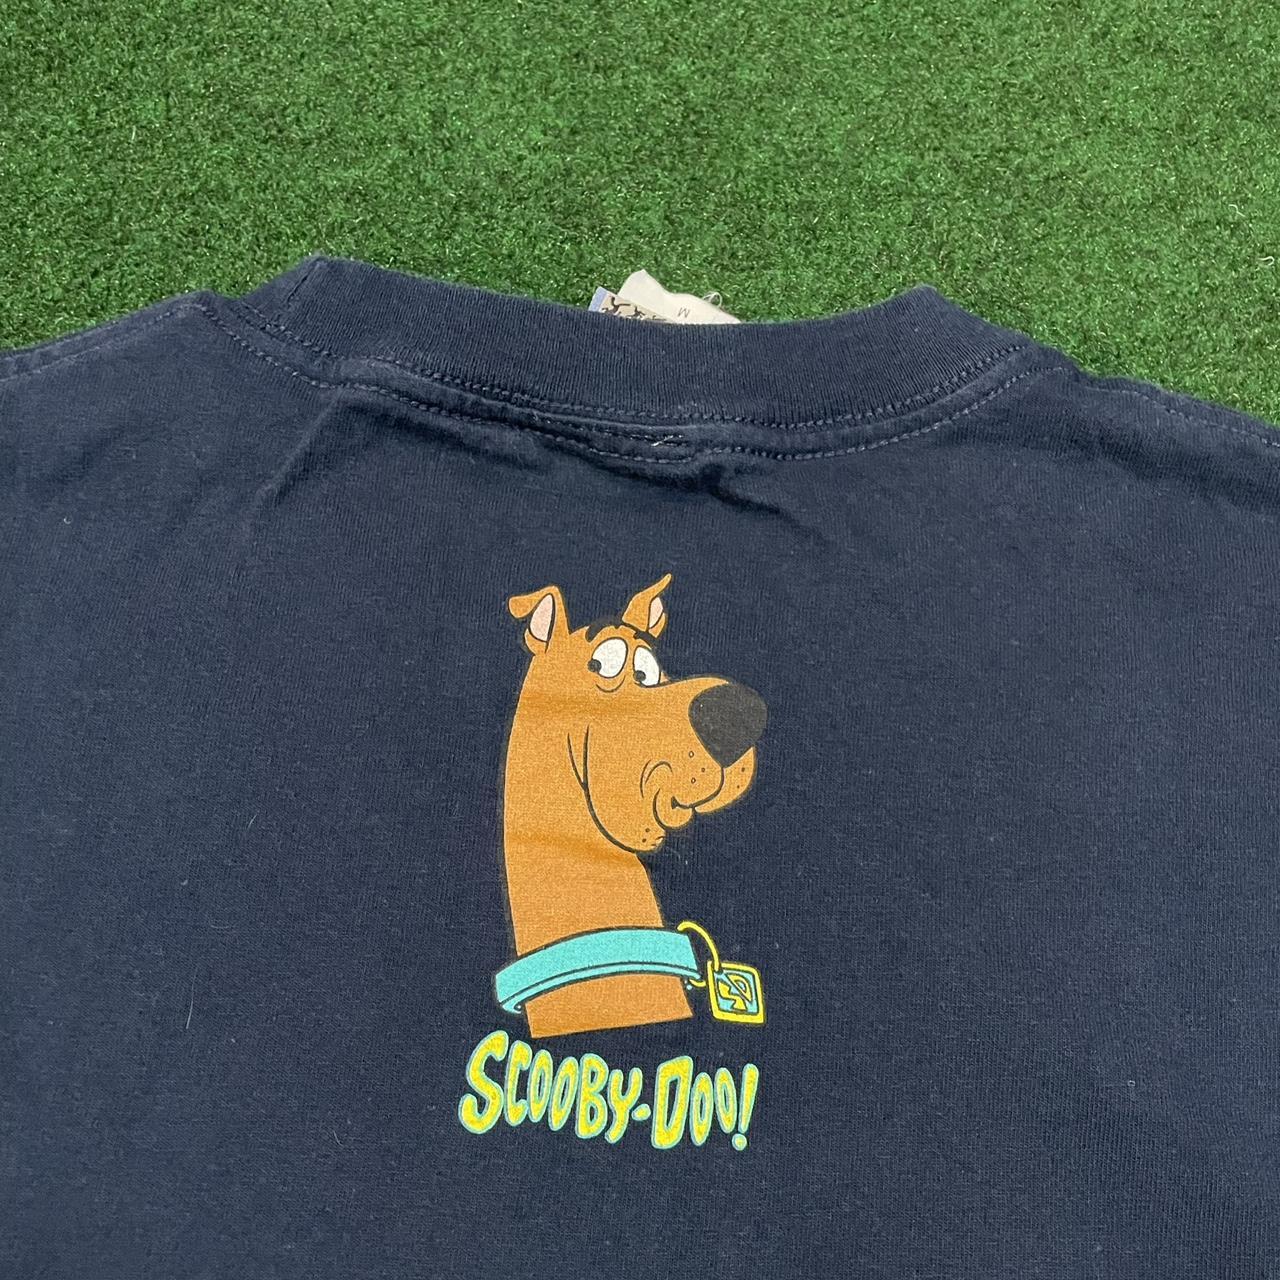 Vintage Y2k Cartoon Network Scooby Doo T-Shirt No... - Depop